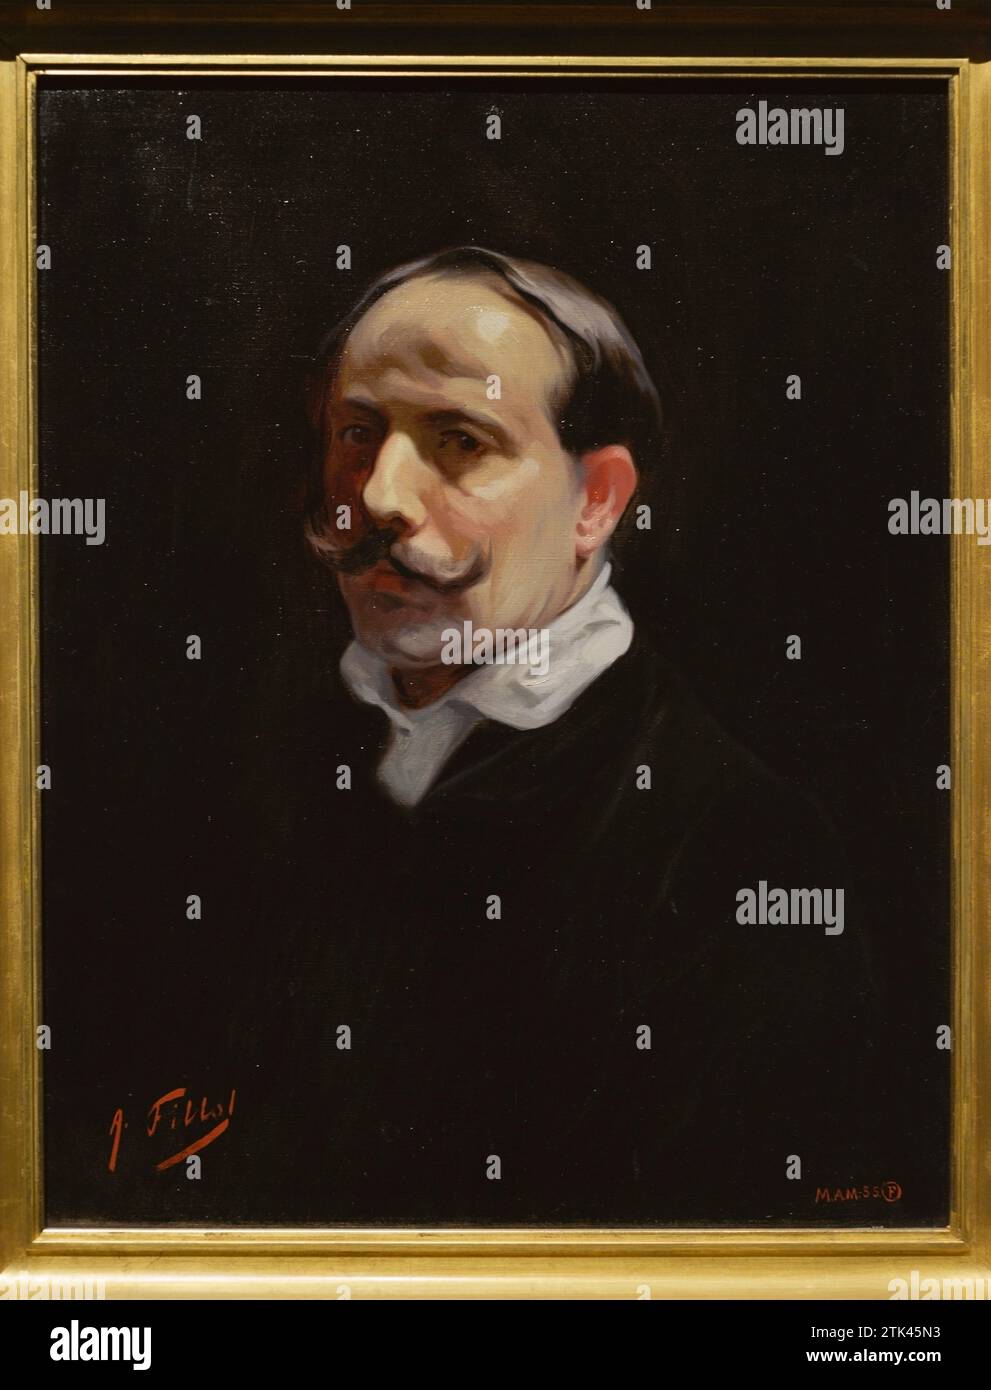 Antonio Fillol Granell (1870-1930) Peintre espagnol. Autoportrait, ca. 1915. Huile sur toile, 66 x 51 cm. Musée du Prado. Madrid. Espagne. Banque D'Images